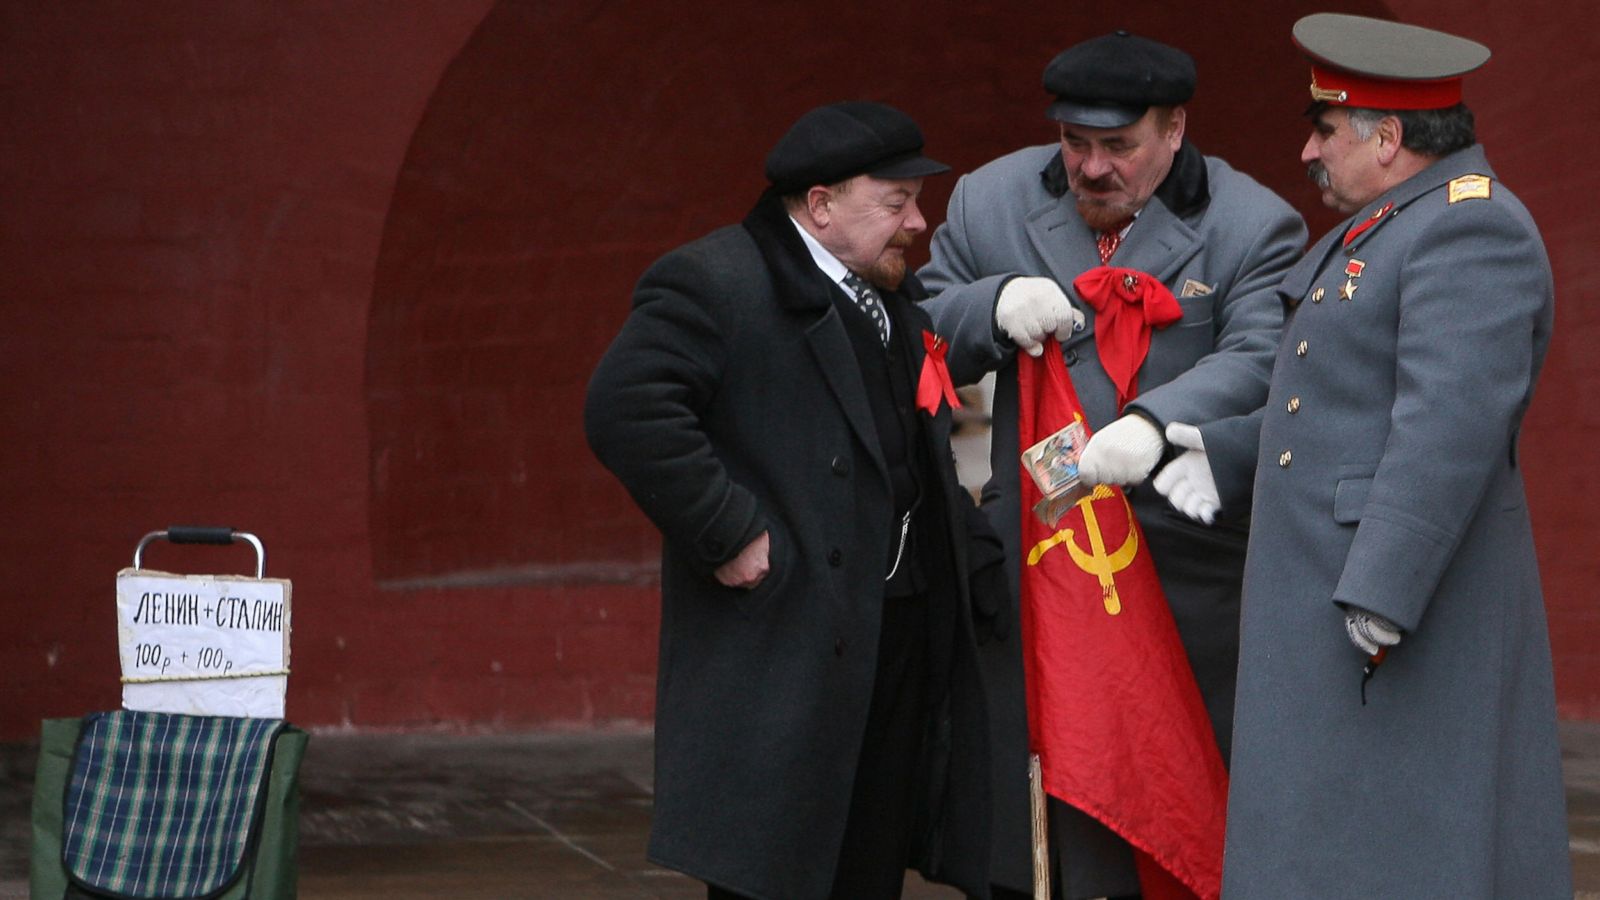 сталин и ленин на красной площади